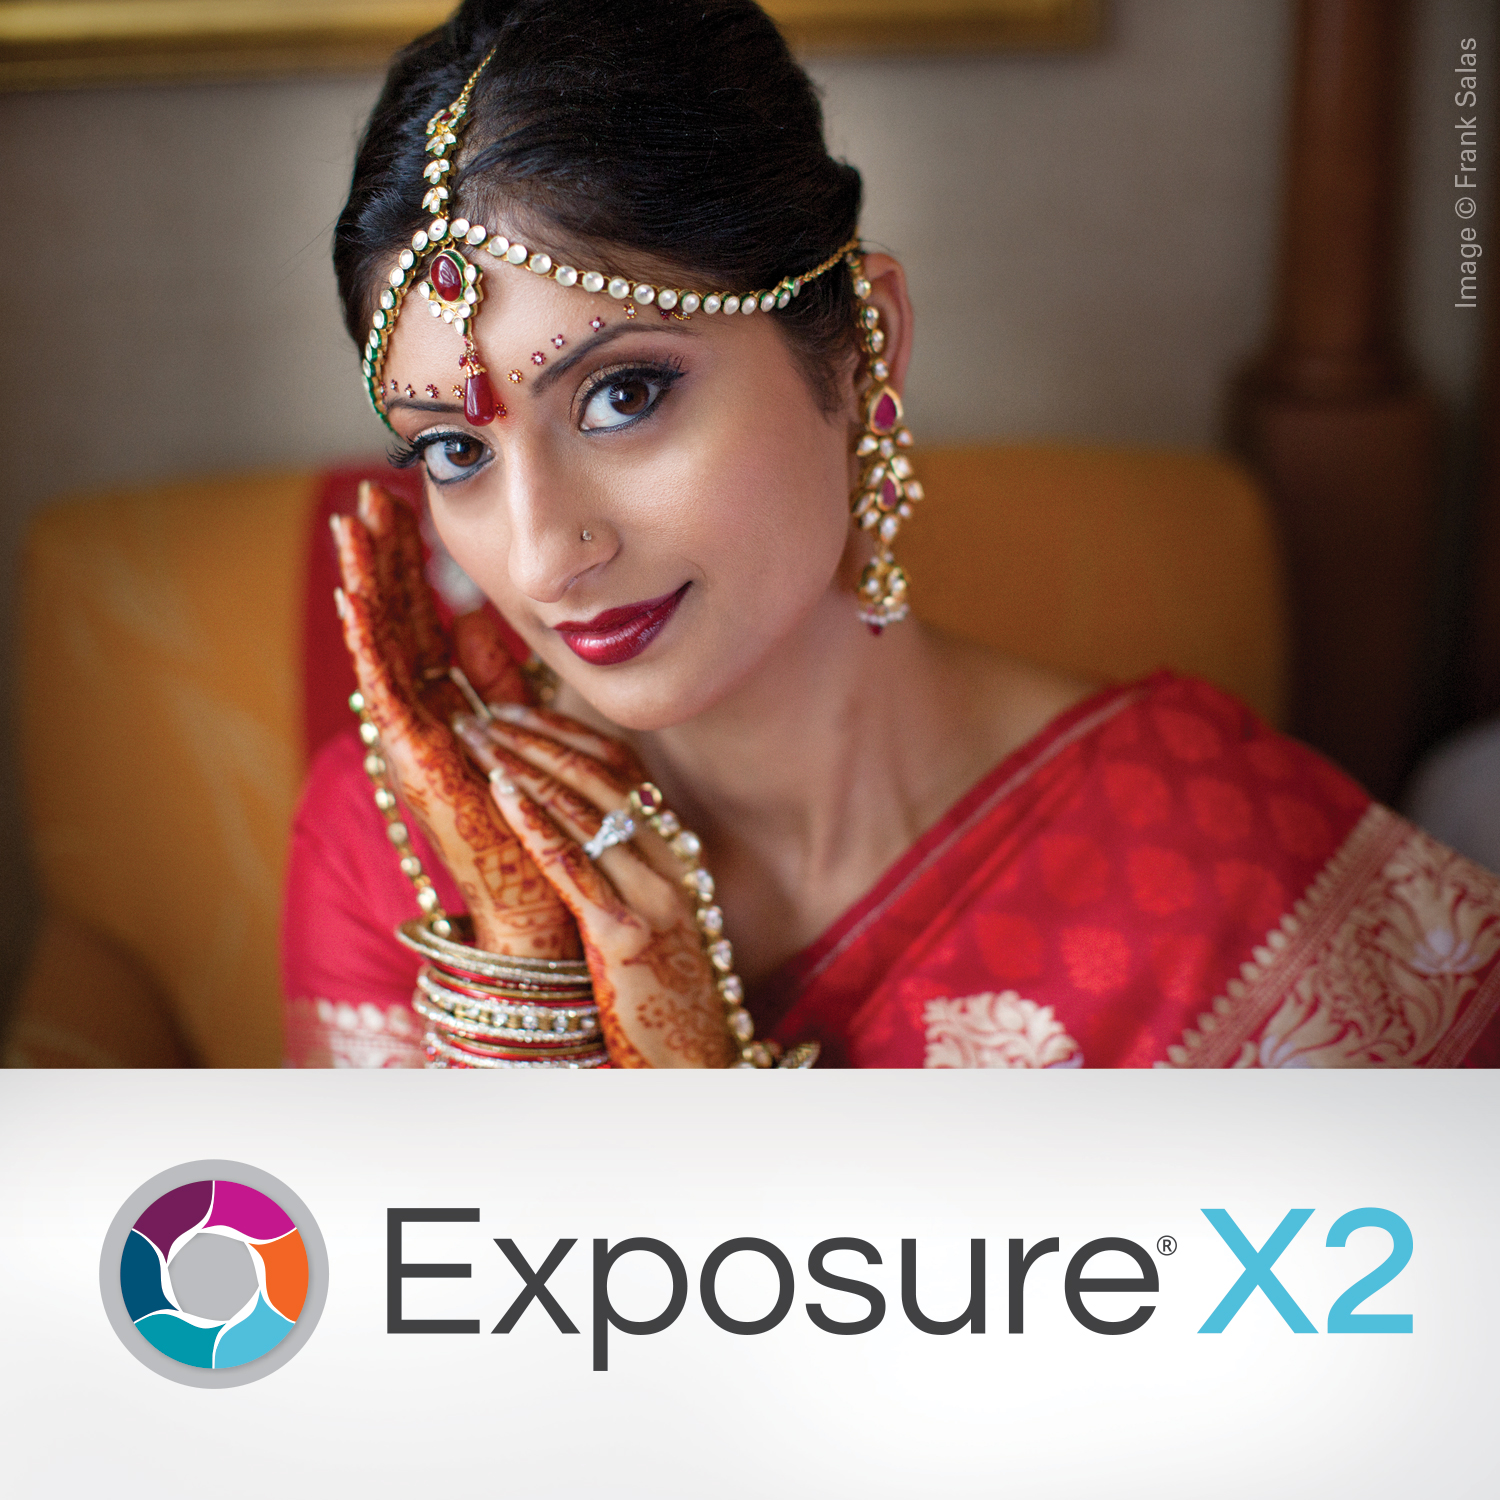 Exposure X2